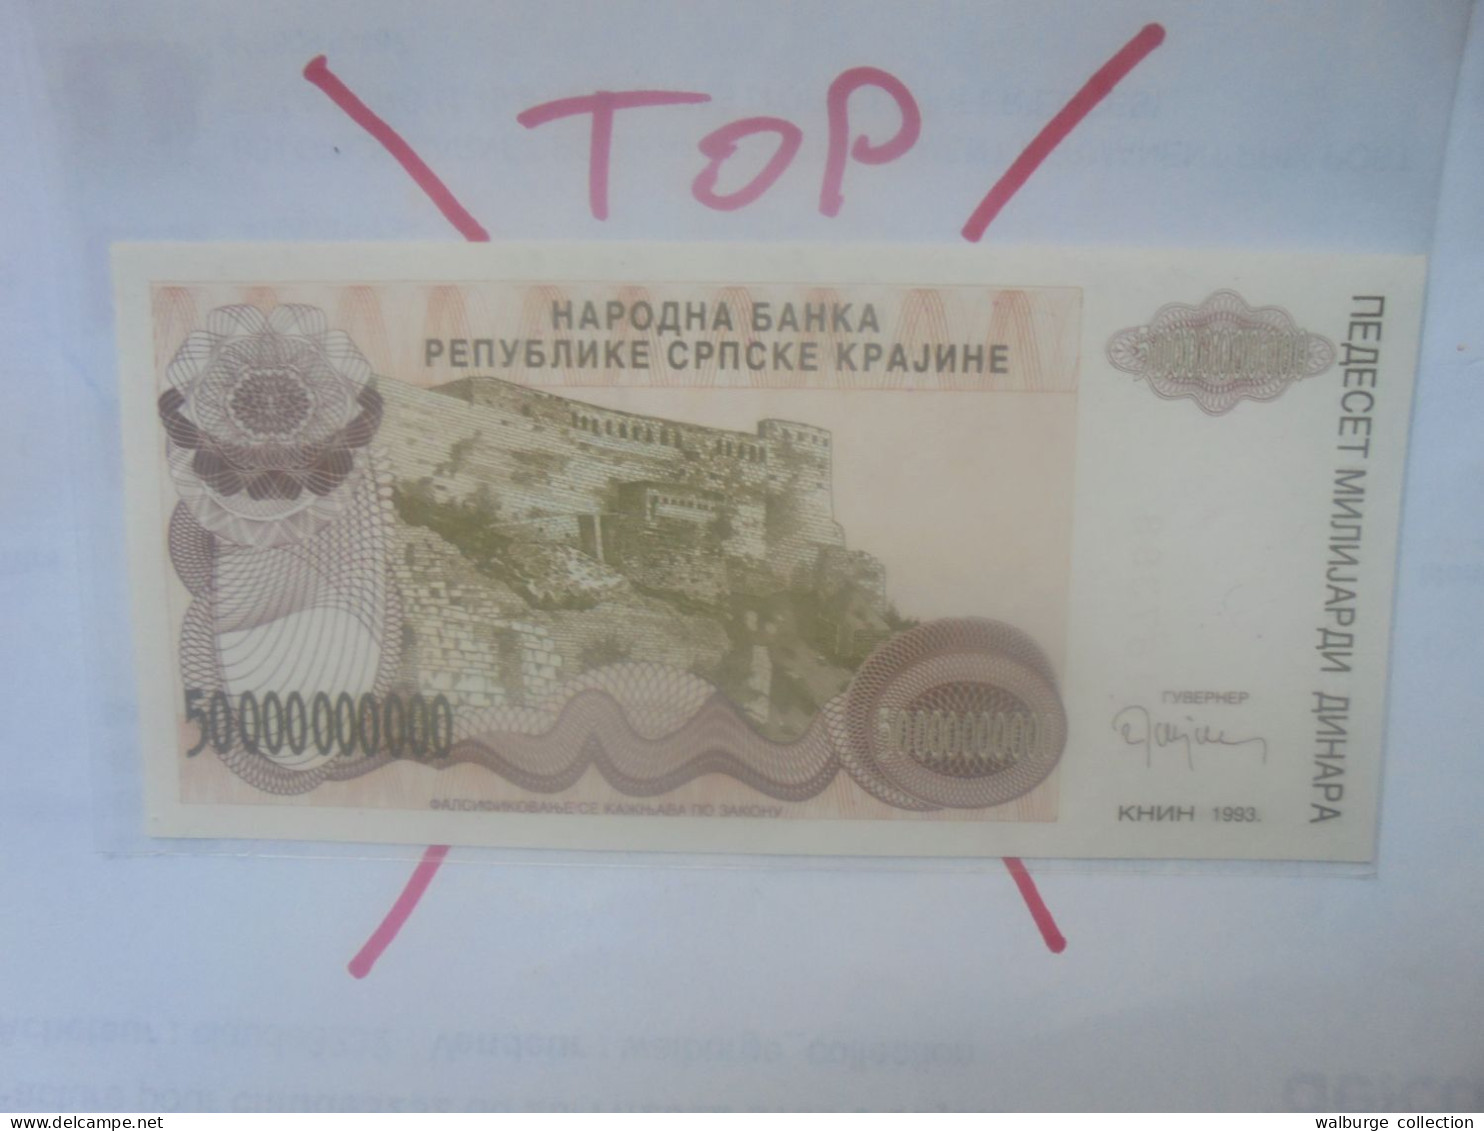 République Serbe (KNIN) 50.000.000.000 DINARA 1993 Neuf (B.30) - Serbie